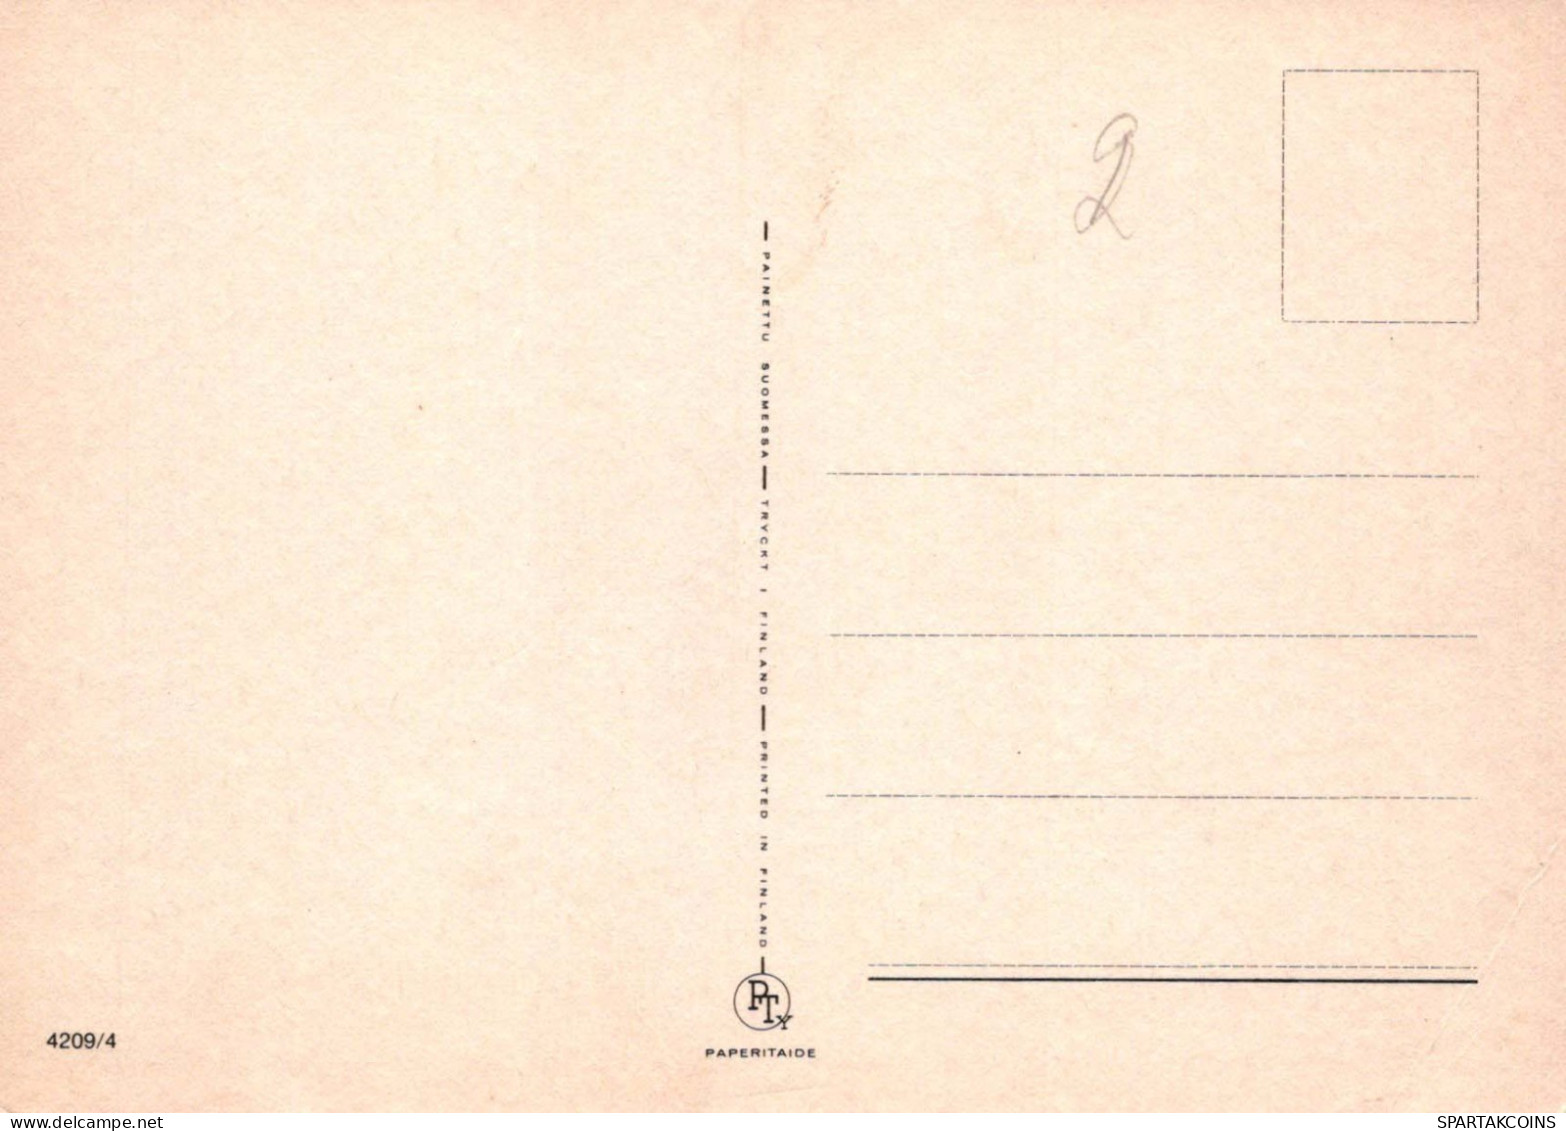 ALLES GUTE ZUM GEBURTSTAG 2 Jährige JUNGE KINDER Vintage Postal CPSM #PBT985.A - Birthday